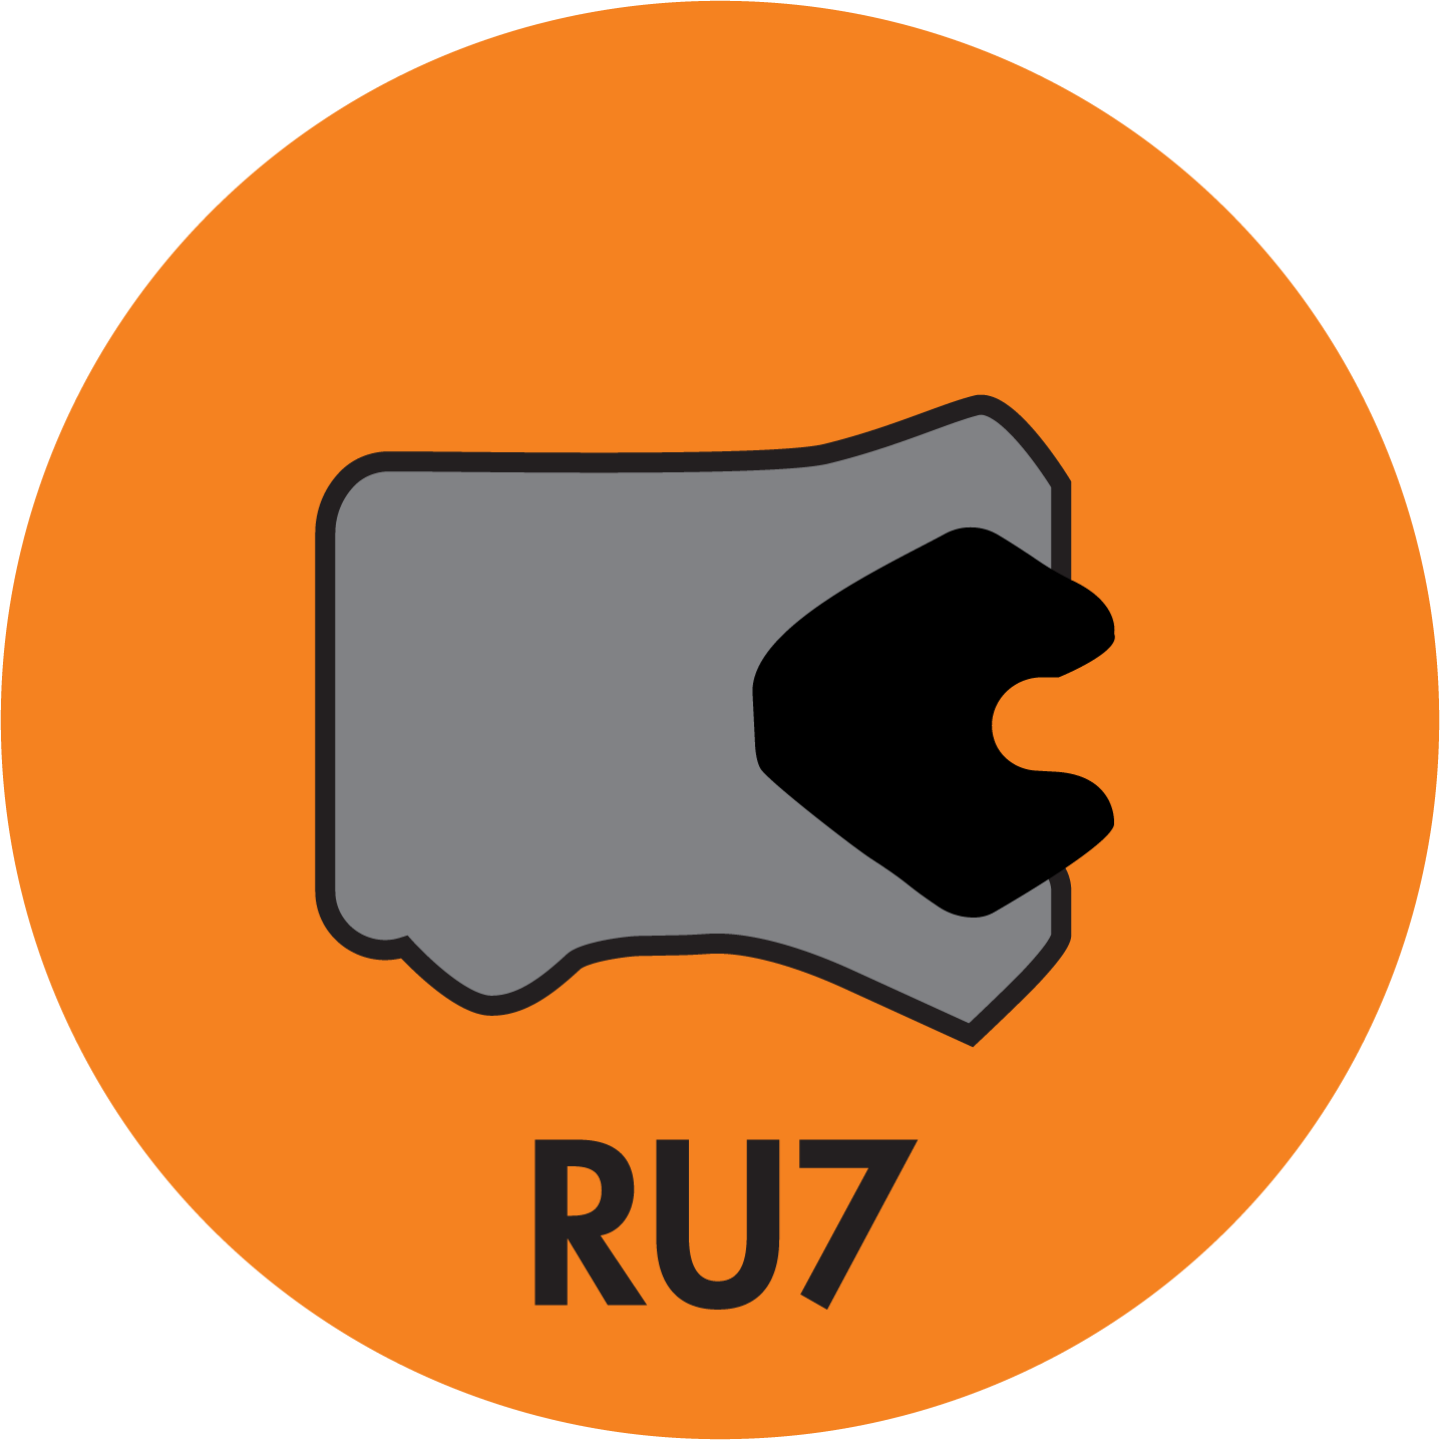 RU7 TWIN LIP ROD (LOADED) U-CUP (AU+NBR) - RU7-31203500-500-P92E Image 1